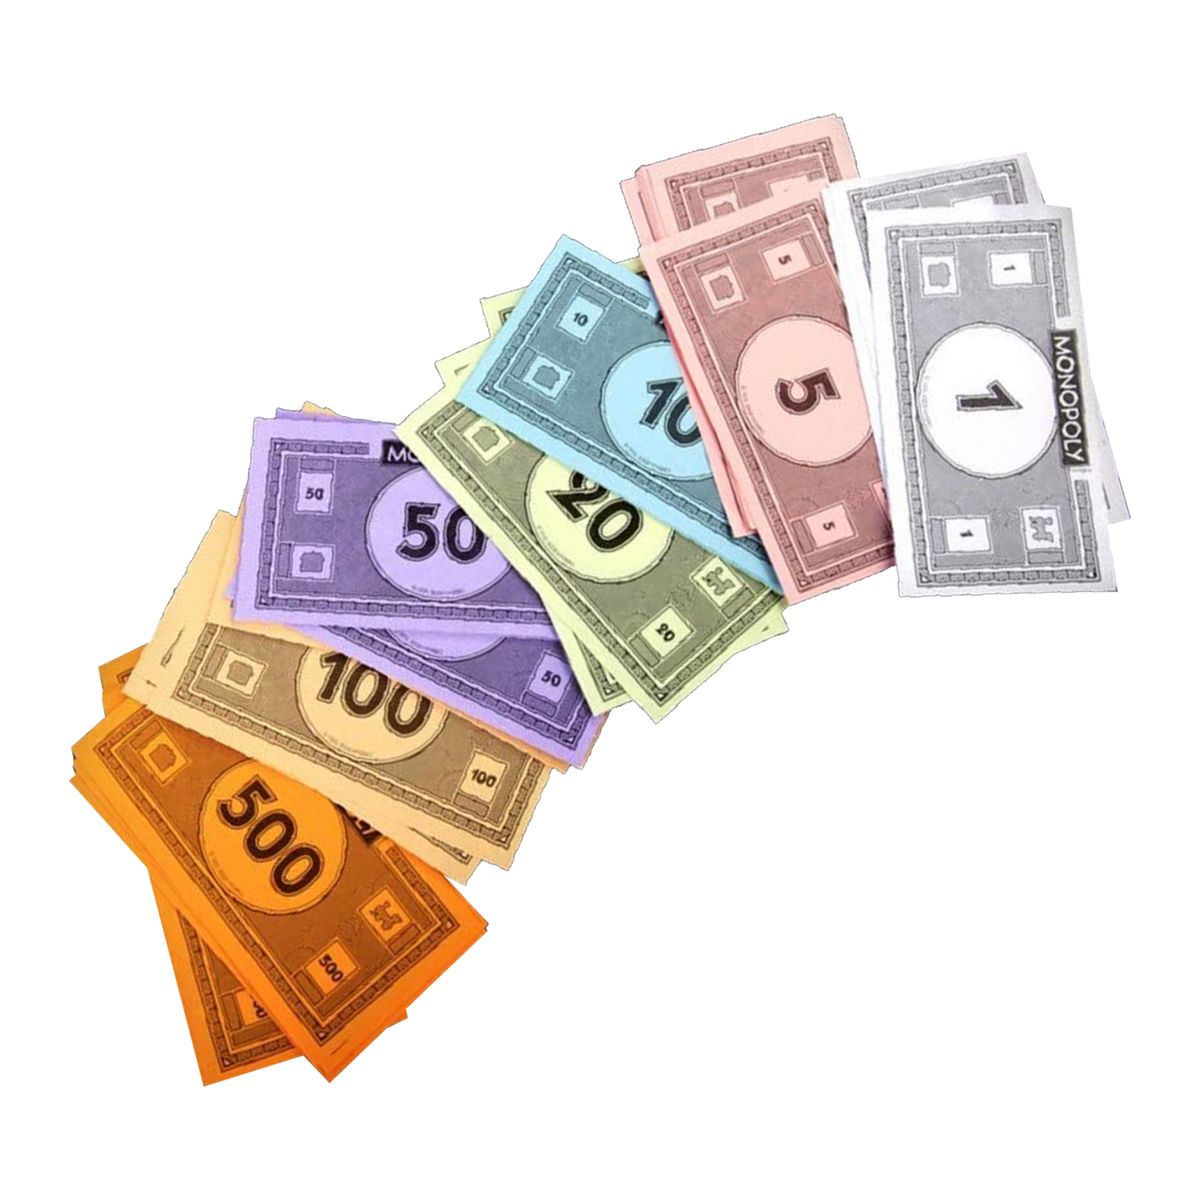 Monopoly Spielgeld Monopolygeld Geldscheine Scheine City Edition Money Geld 